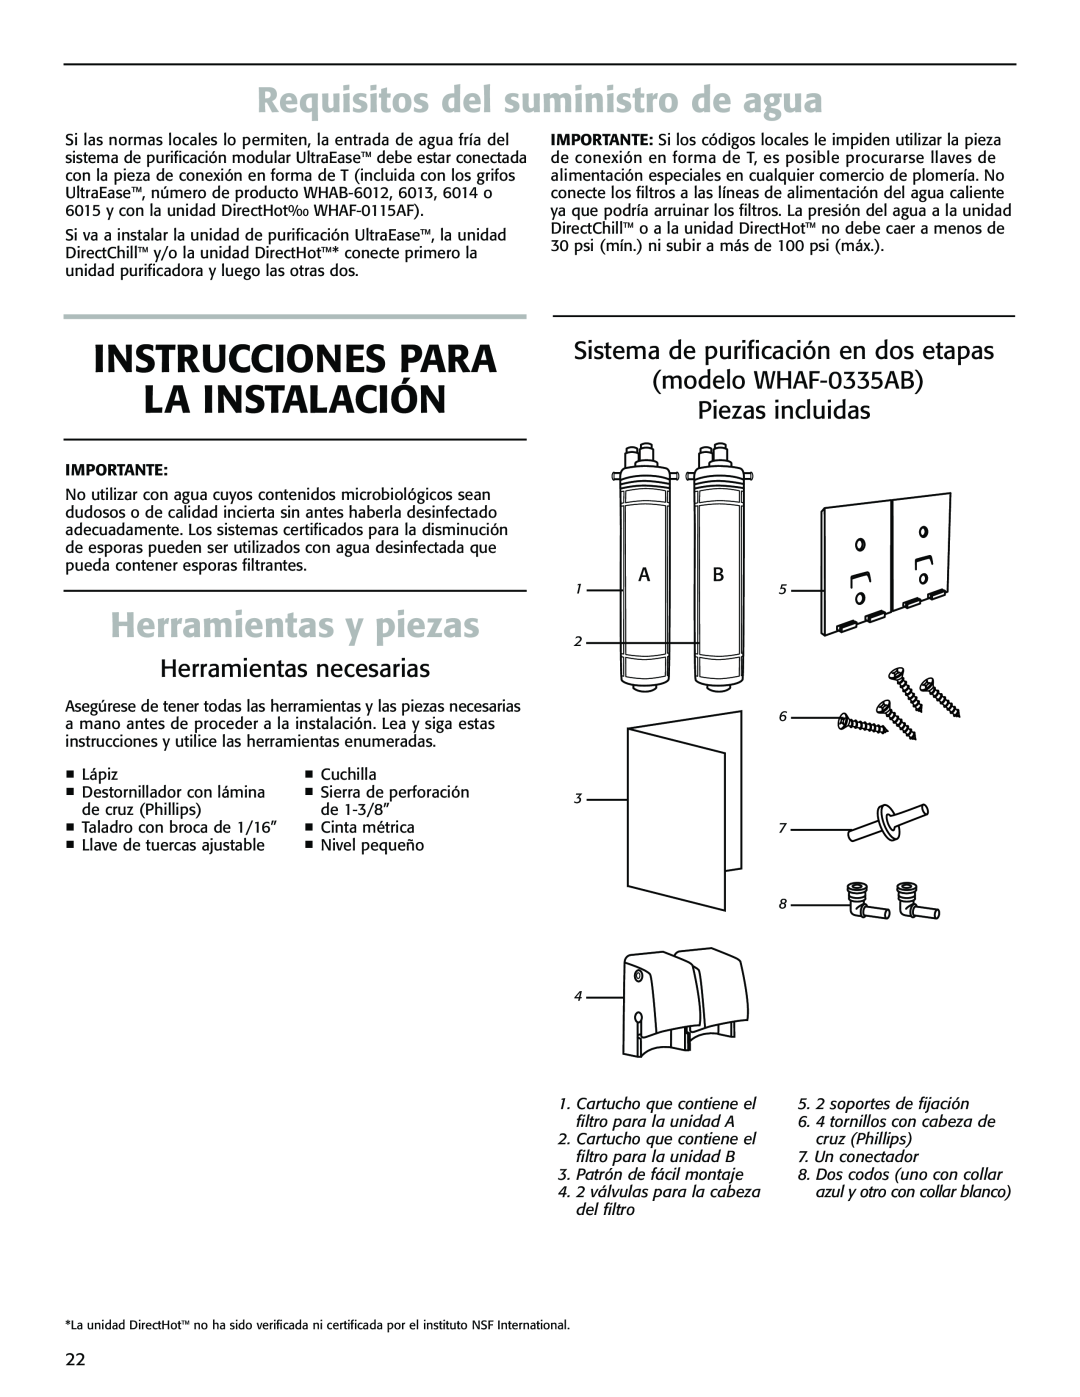 Whirlpool WHAB-6012, WHAB-6015 Instrucciones Para La Instalación, Requisitos del suministro de agua, Herramientas y piezas 